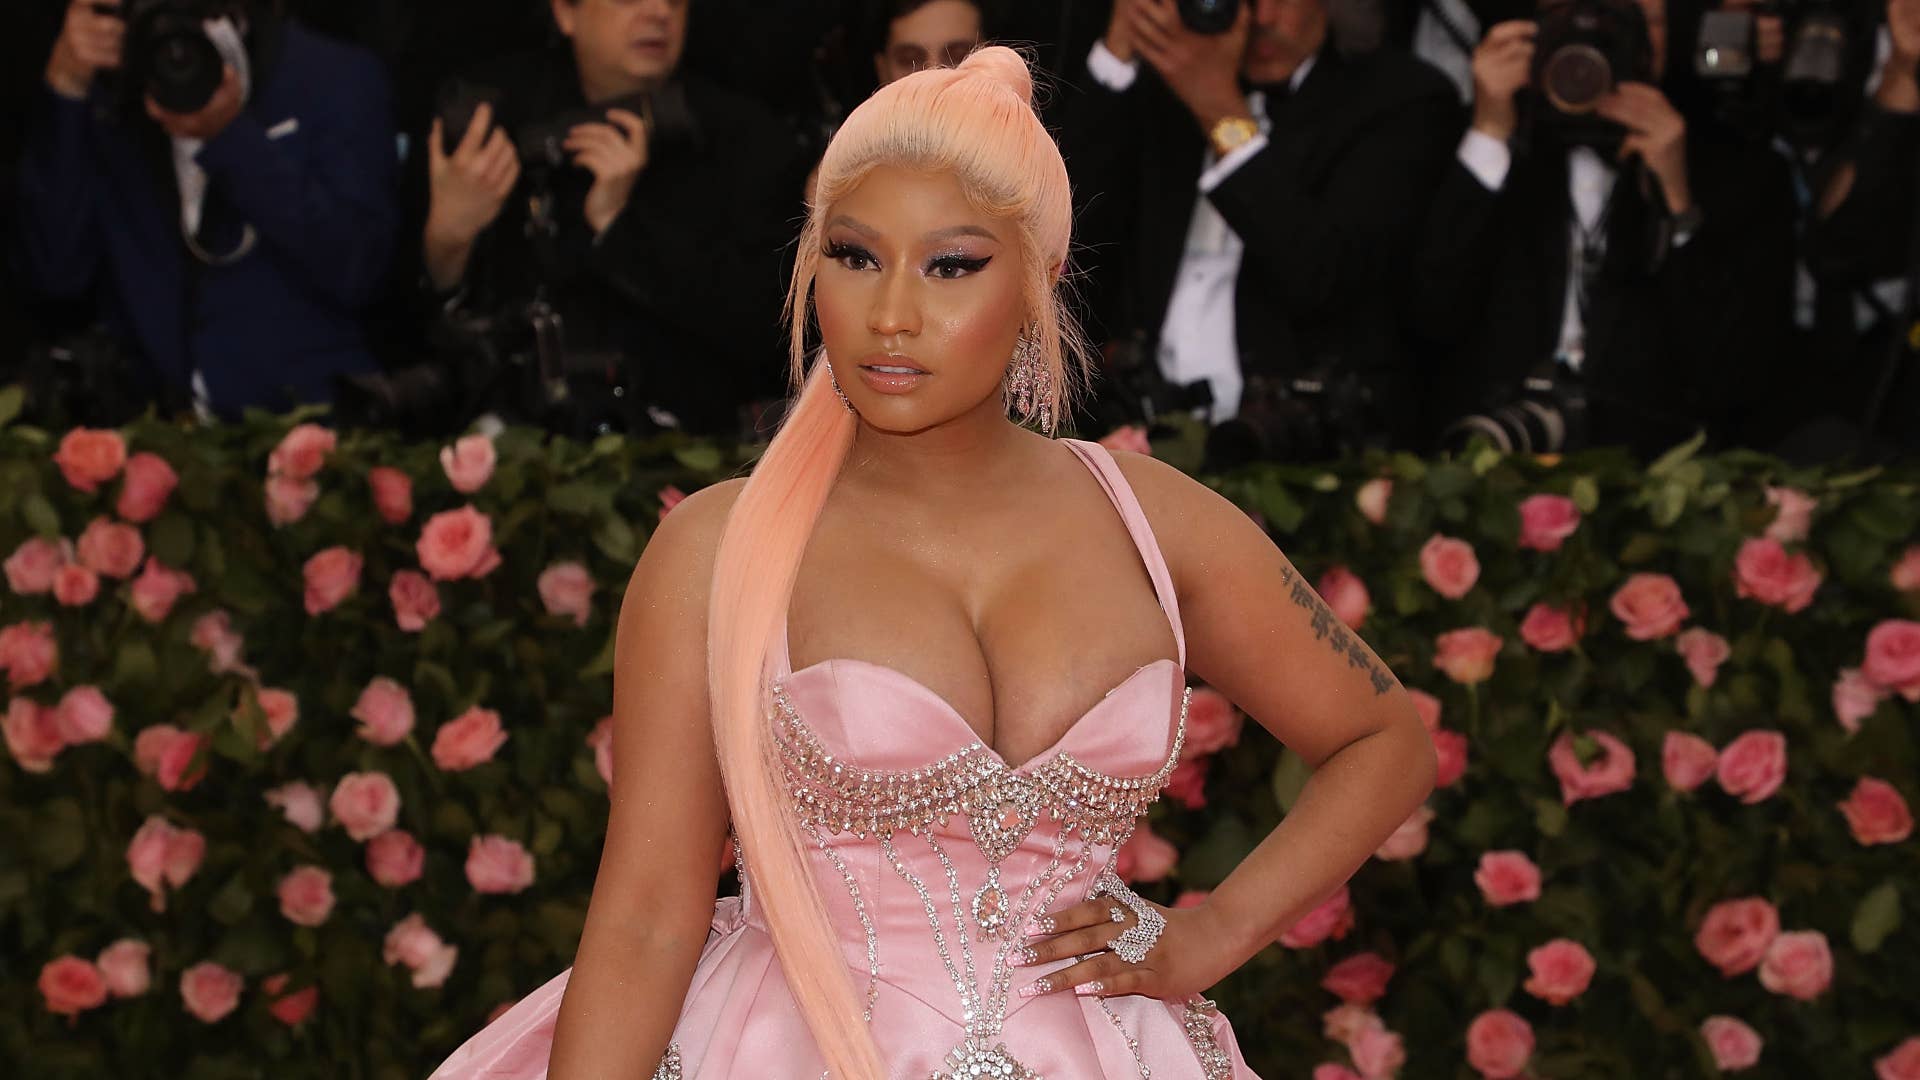 Nicki Minaj attends the 2019 Met Gala celebrating "Camp: Notes on Fashion."